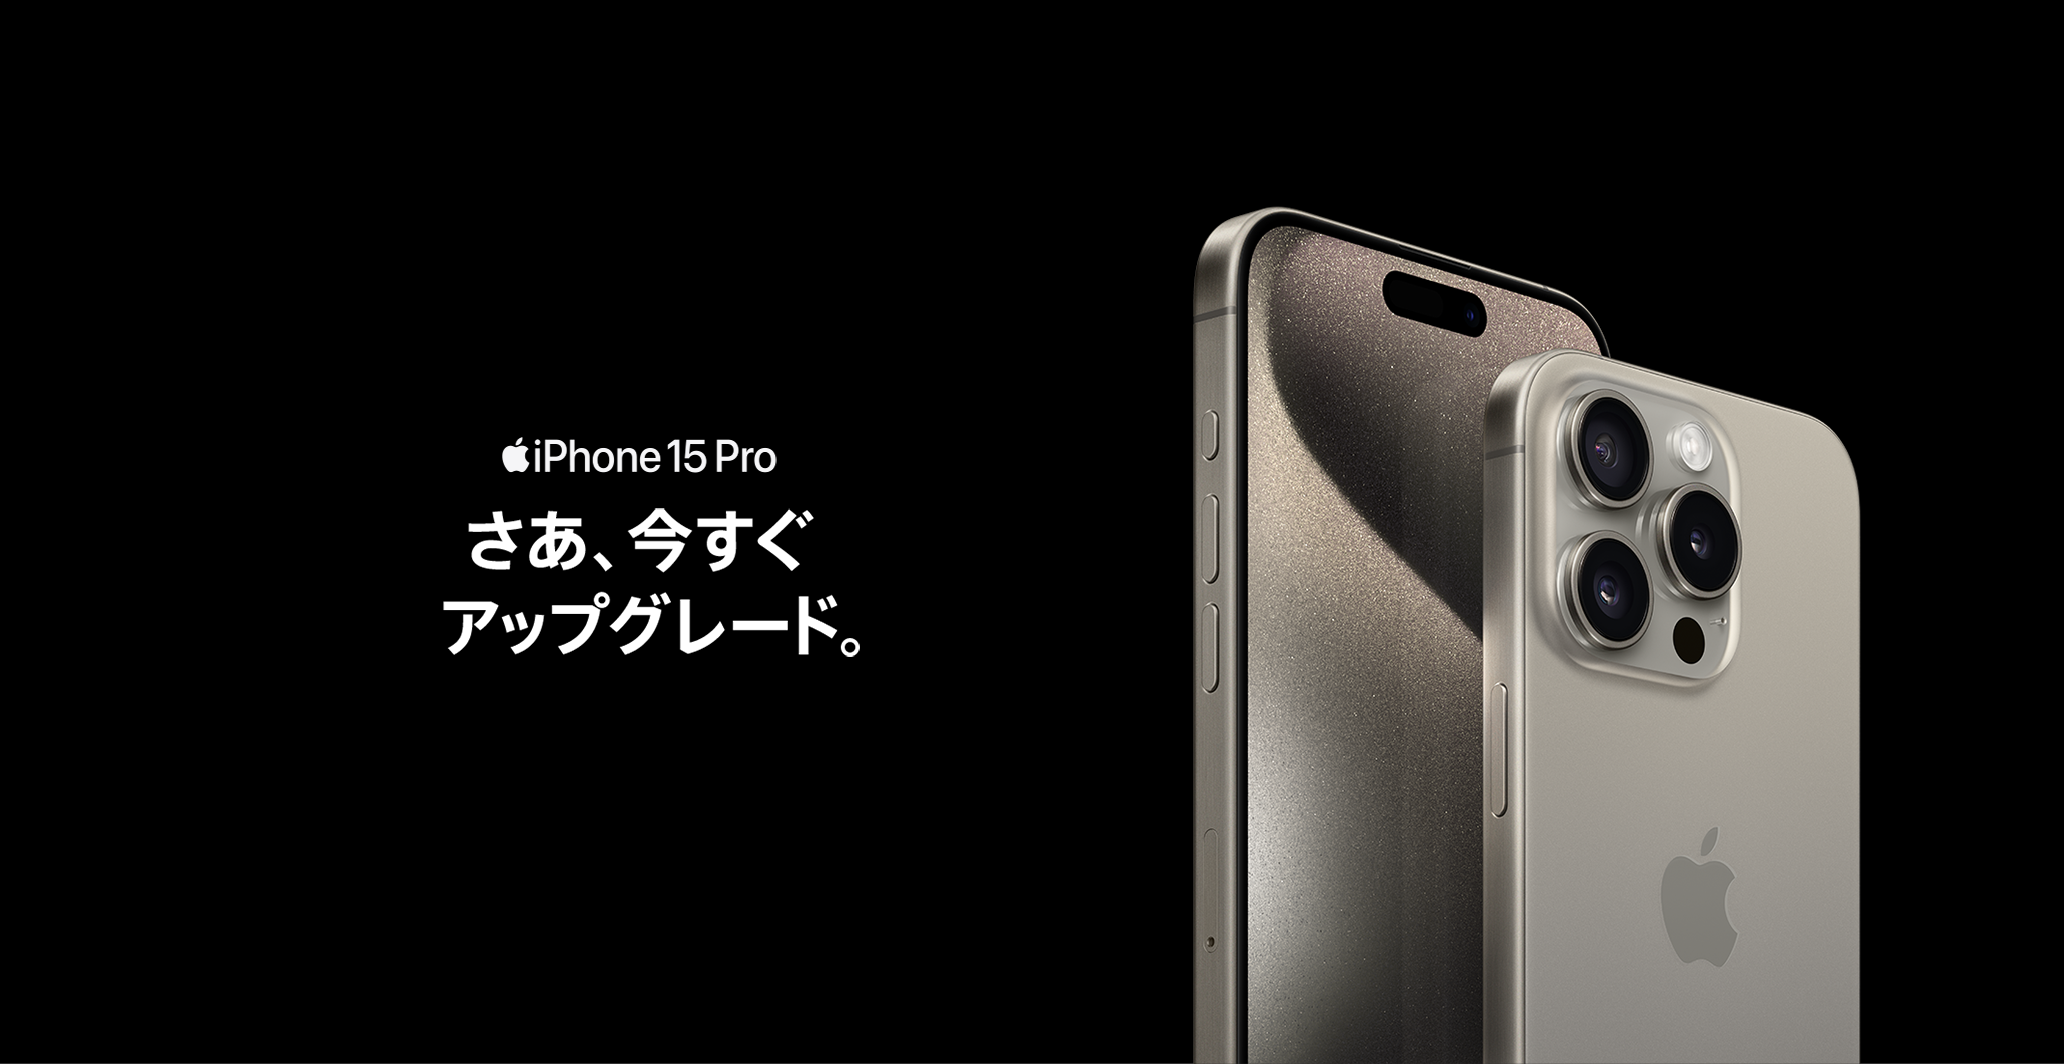 iPhone 15 Pro Max さあ、今すぐアップグレード。